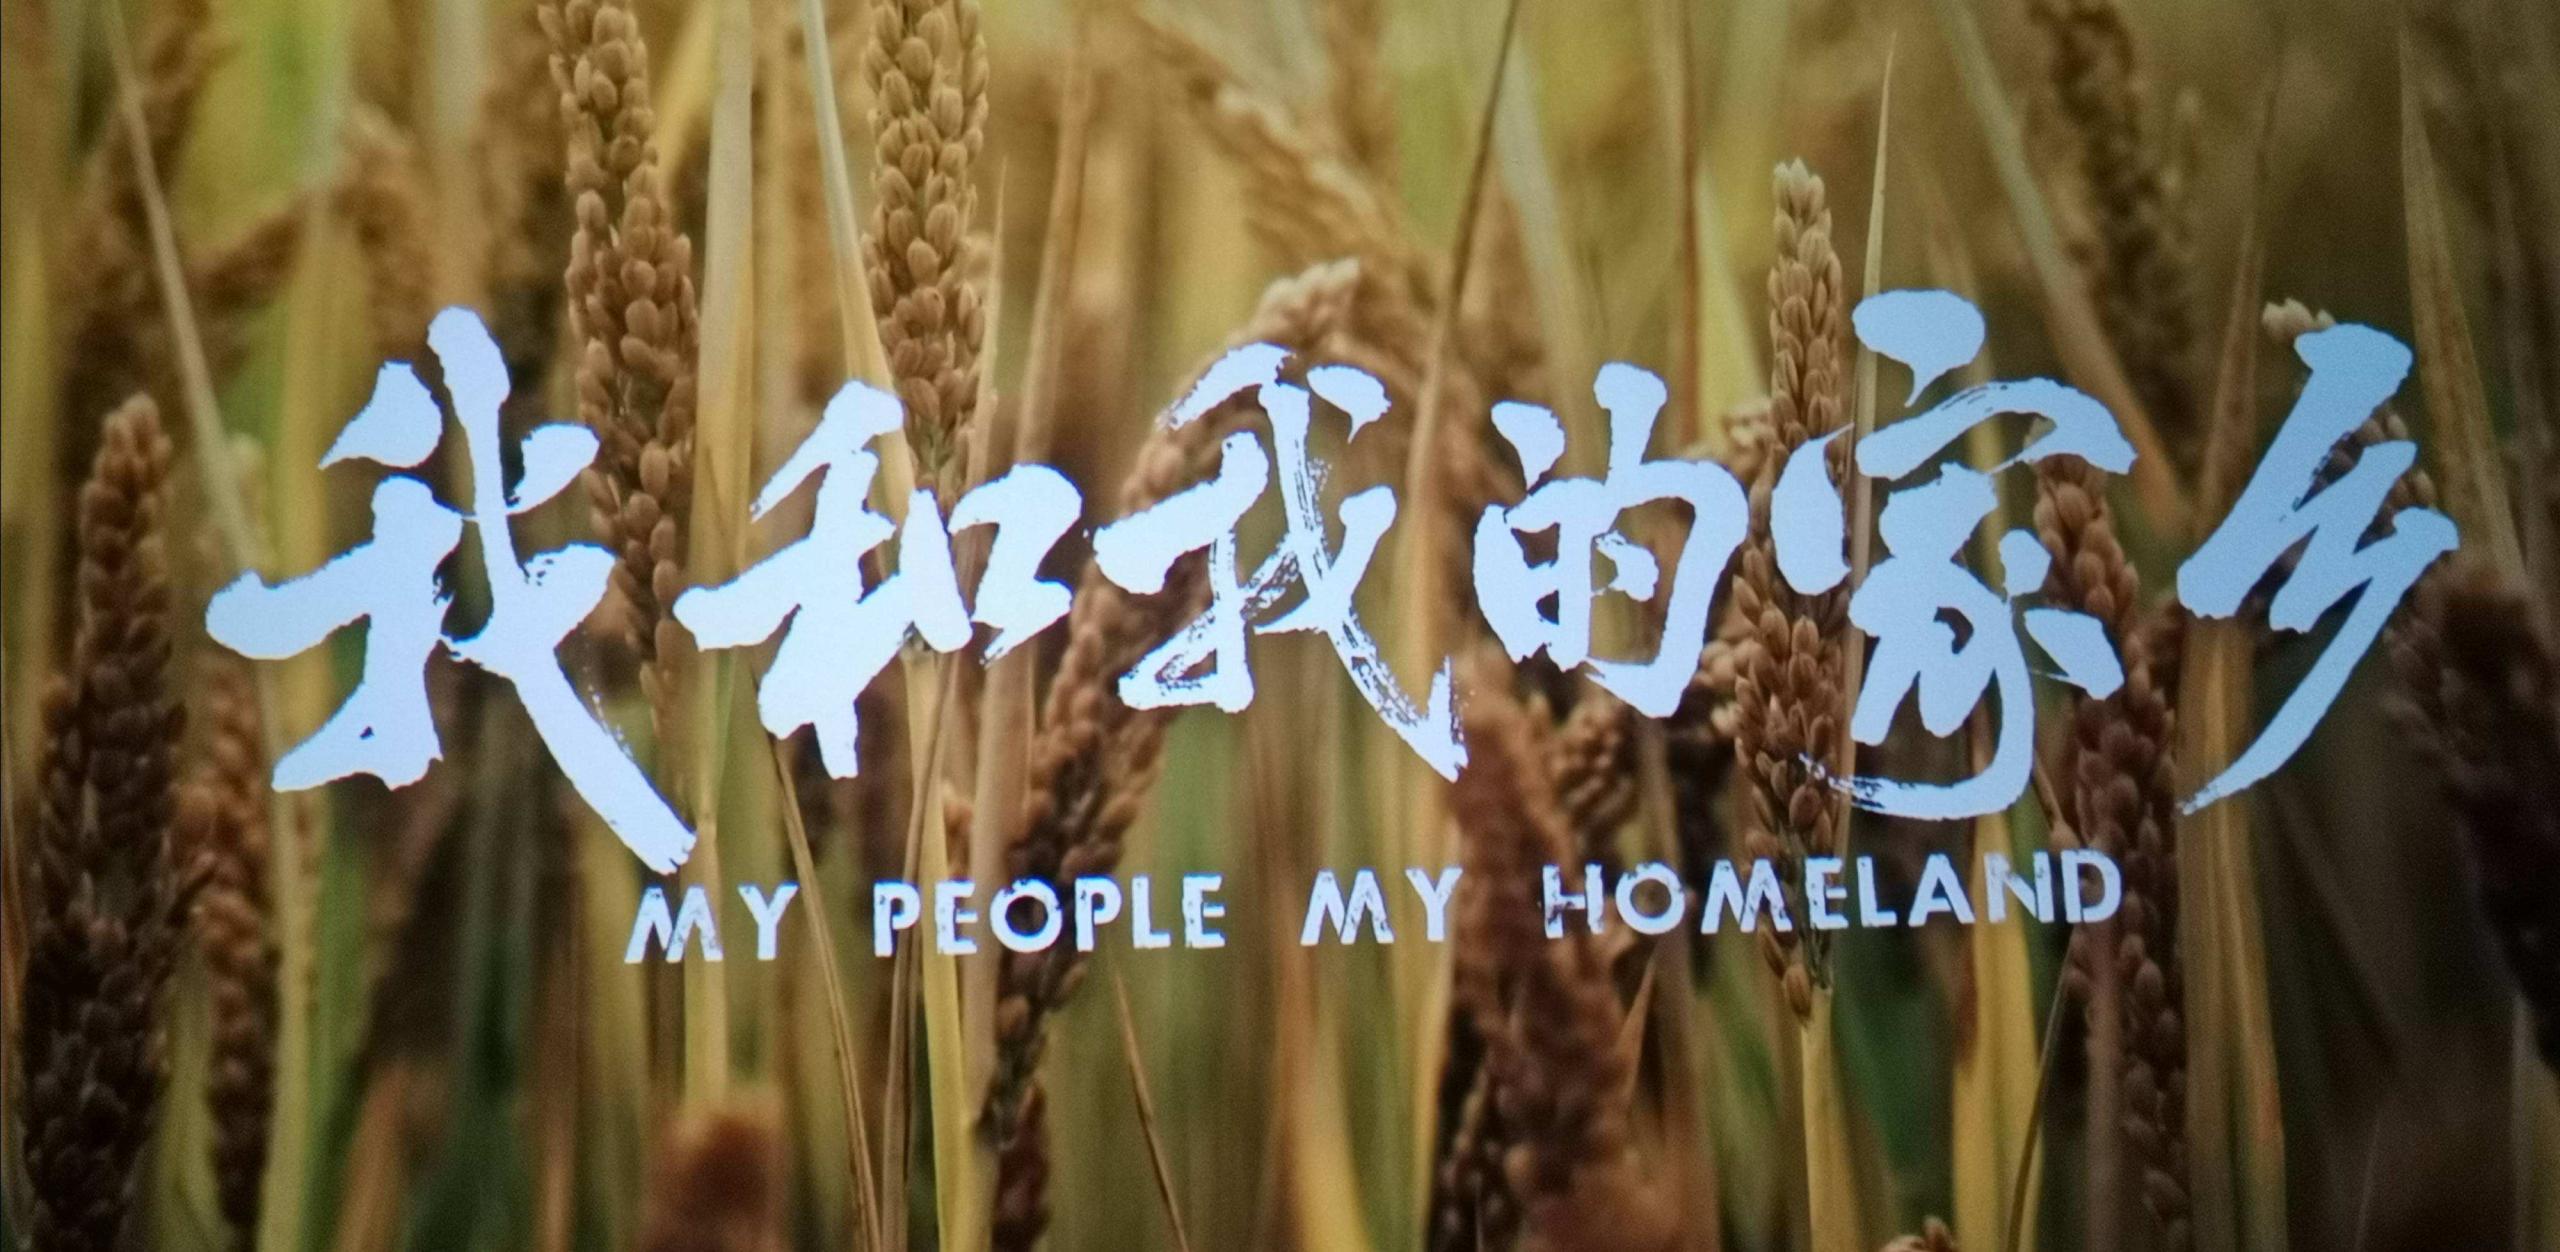 Chinesische Schriftzeichen vor einem Weizenfeld, darunter der Filmtitel "My people my Homeland"